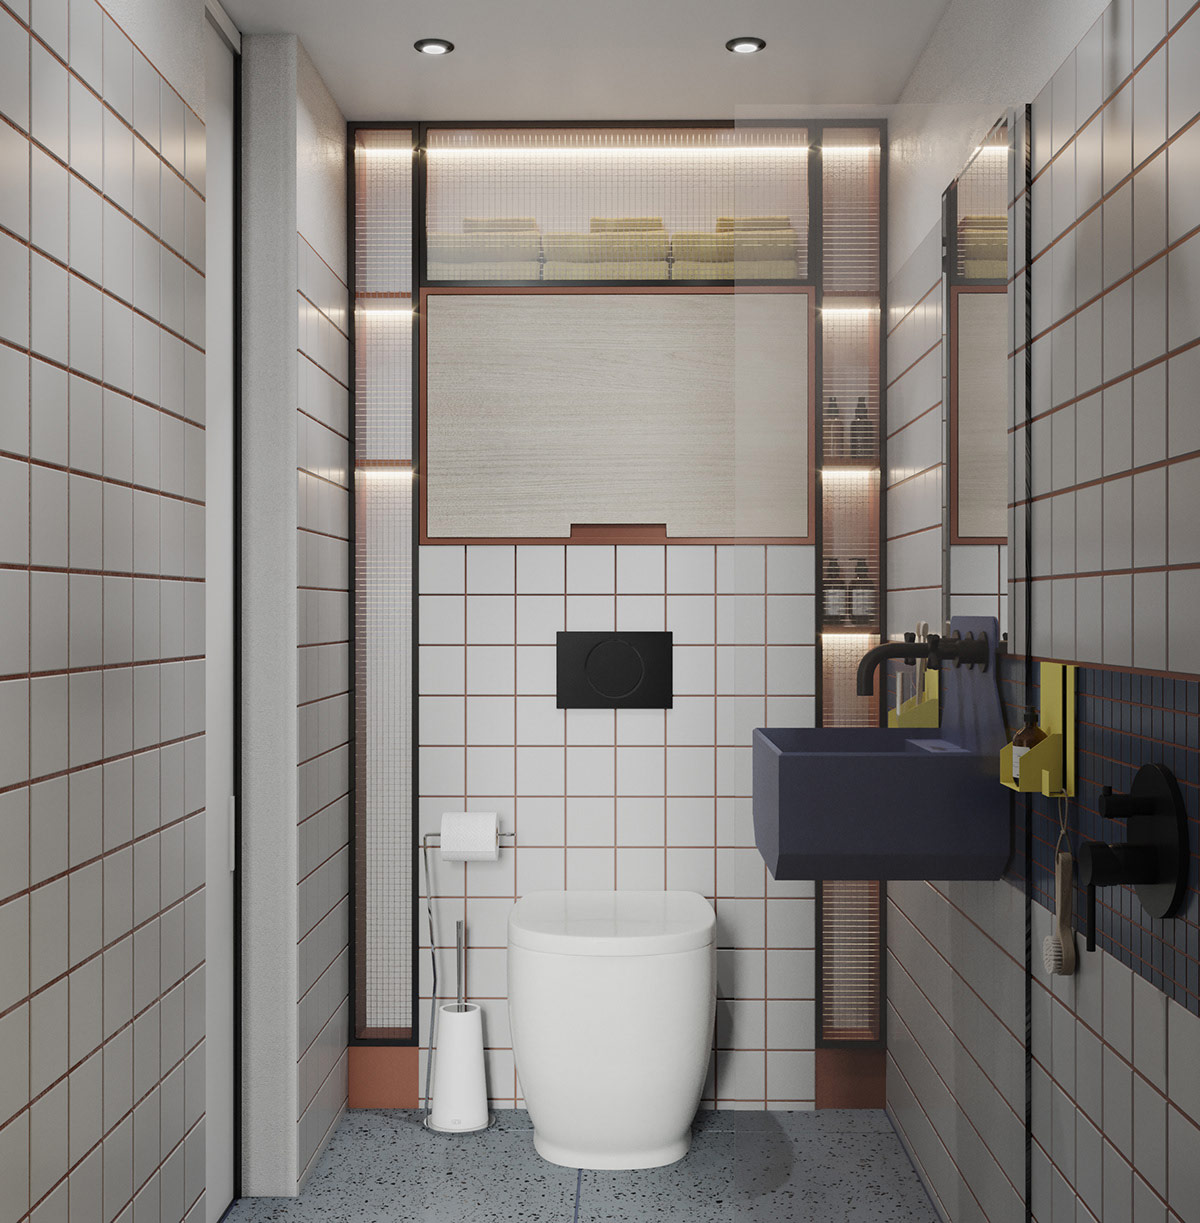 Phòng tắm nhỏ tiện nghi với tường và sàn ốp gạch men màu trắng